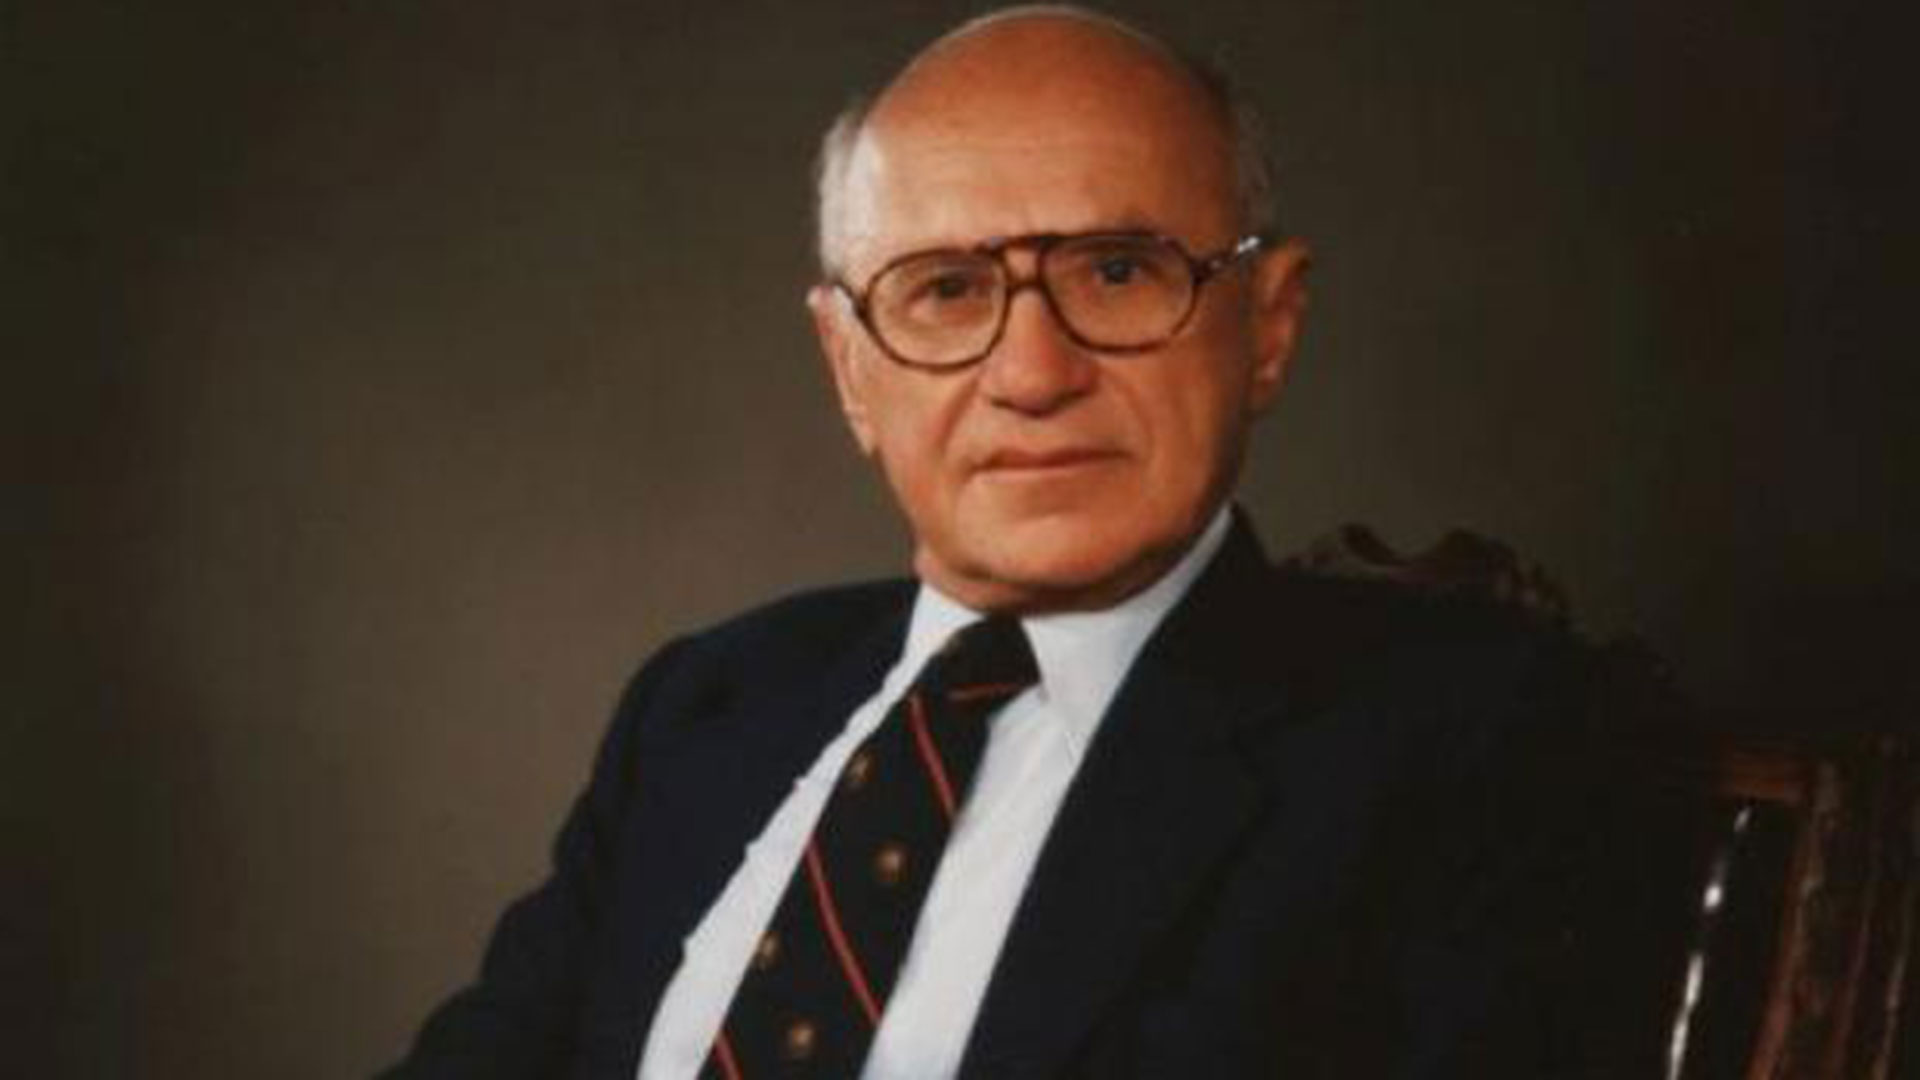 El gran Milton Friedman, en sus clases de la Universidad de Chicago, insistía en la importancia de un crecimiento constante de la cantidad de dinero a ritmo del 3% anual